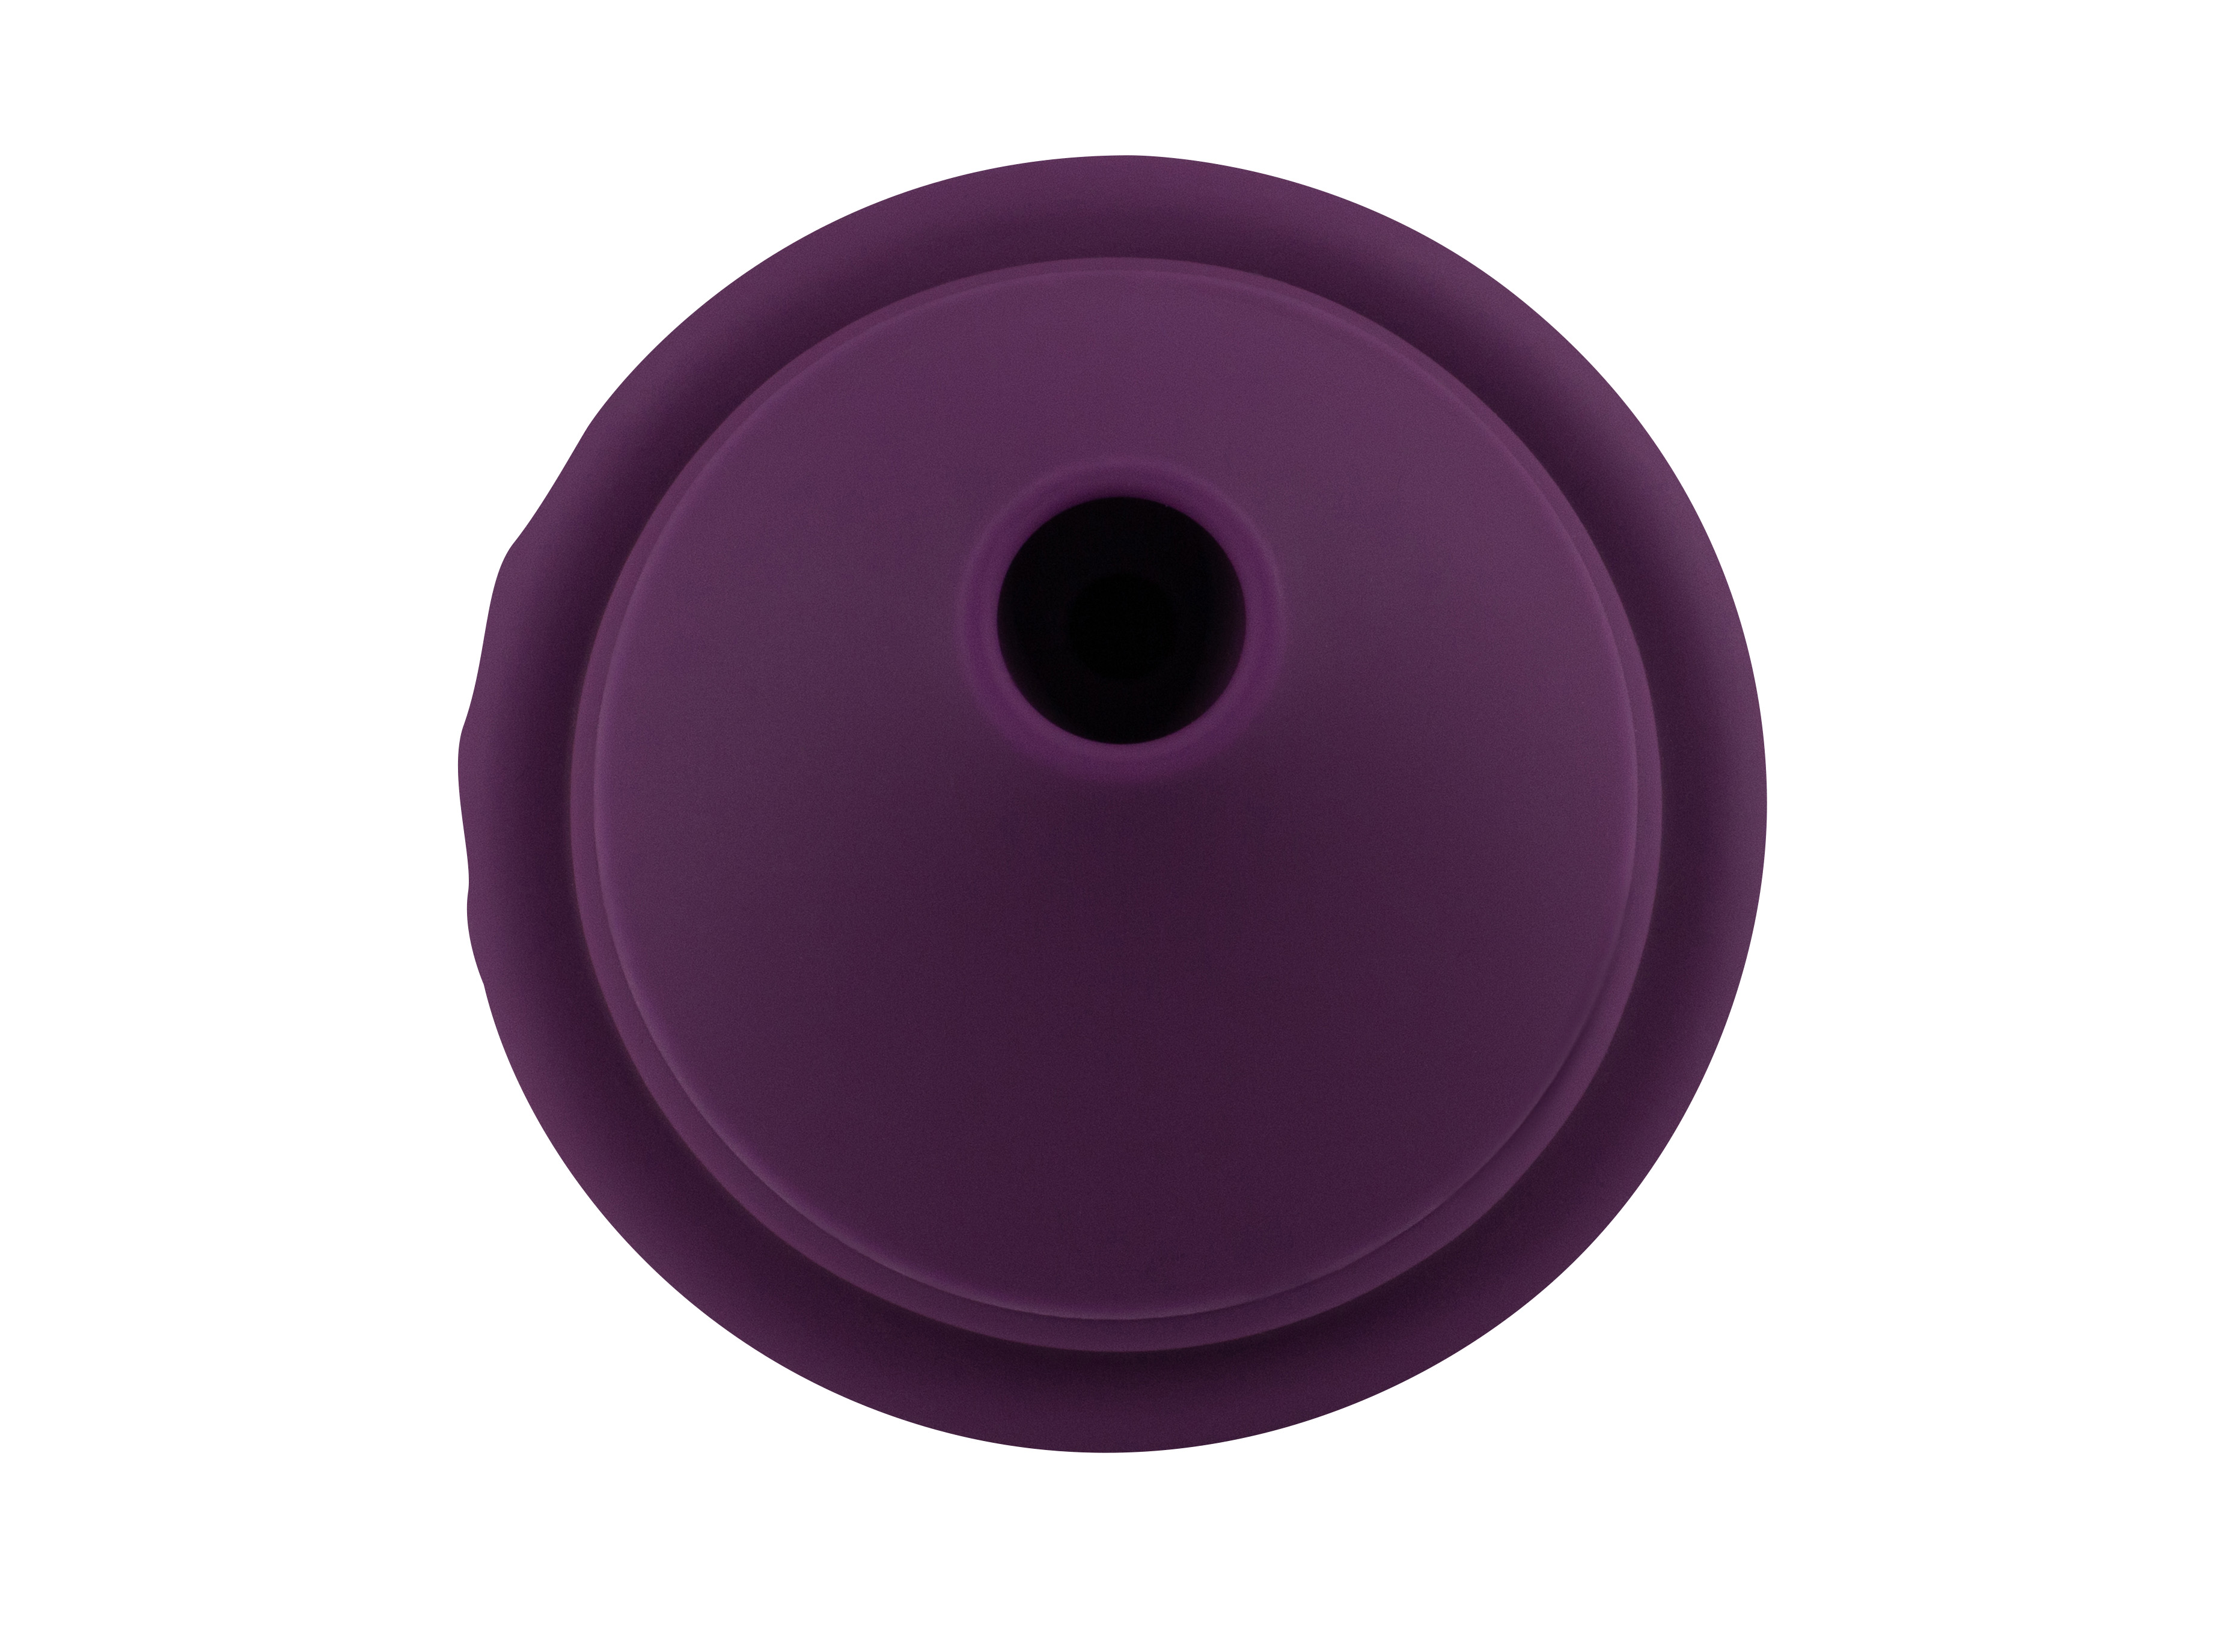 Вакуумный стимулятор клитора с вибрацией Lola Toys Blueberry Cupcake, фиолетовый